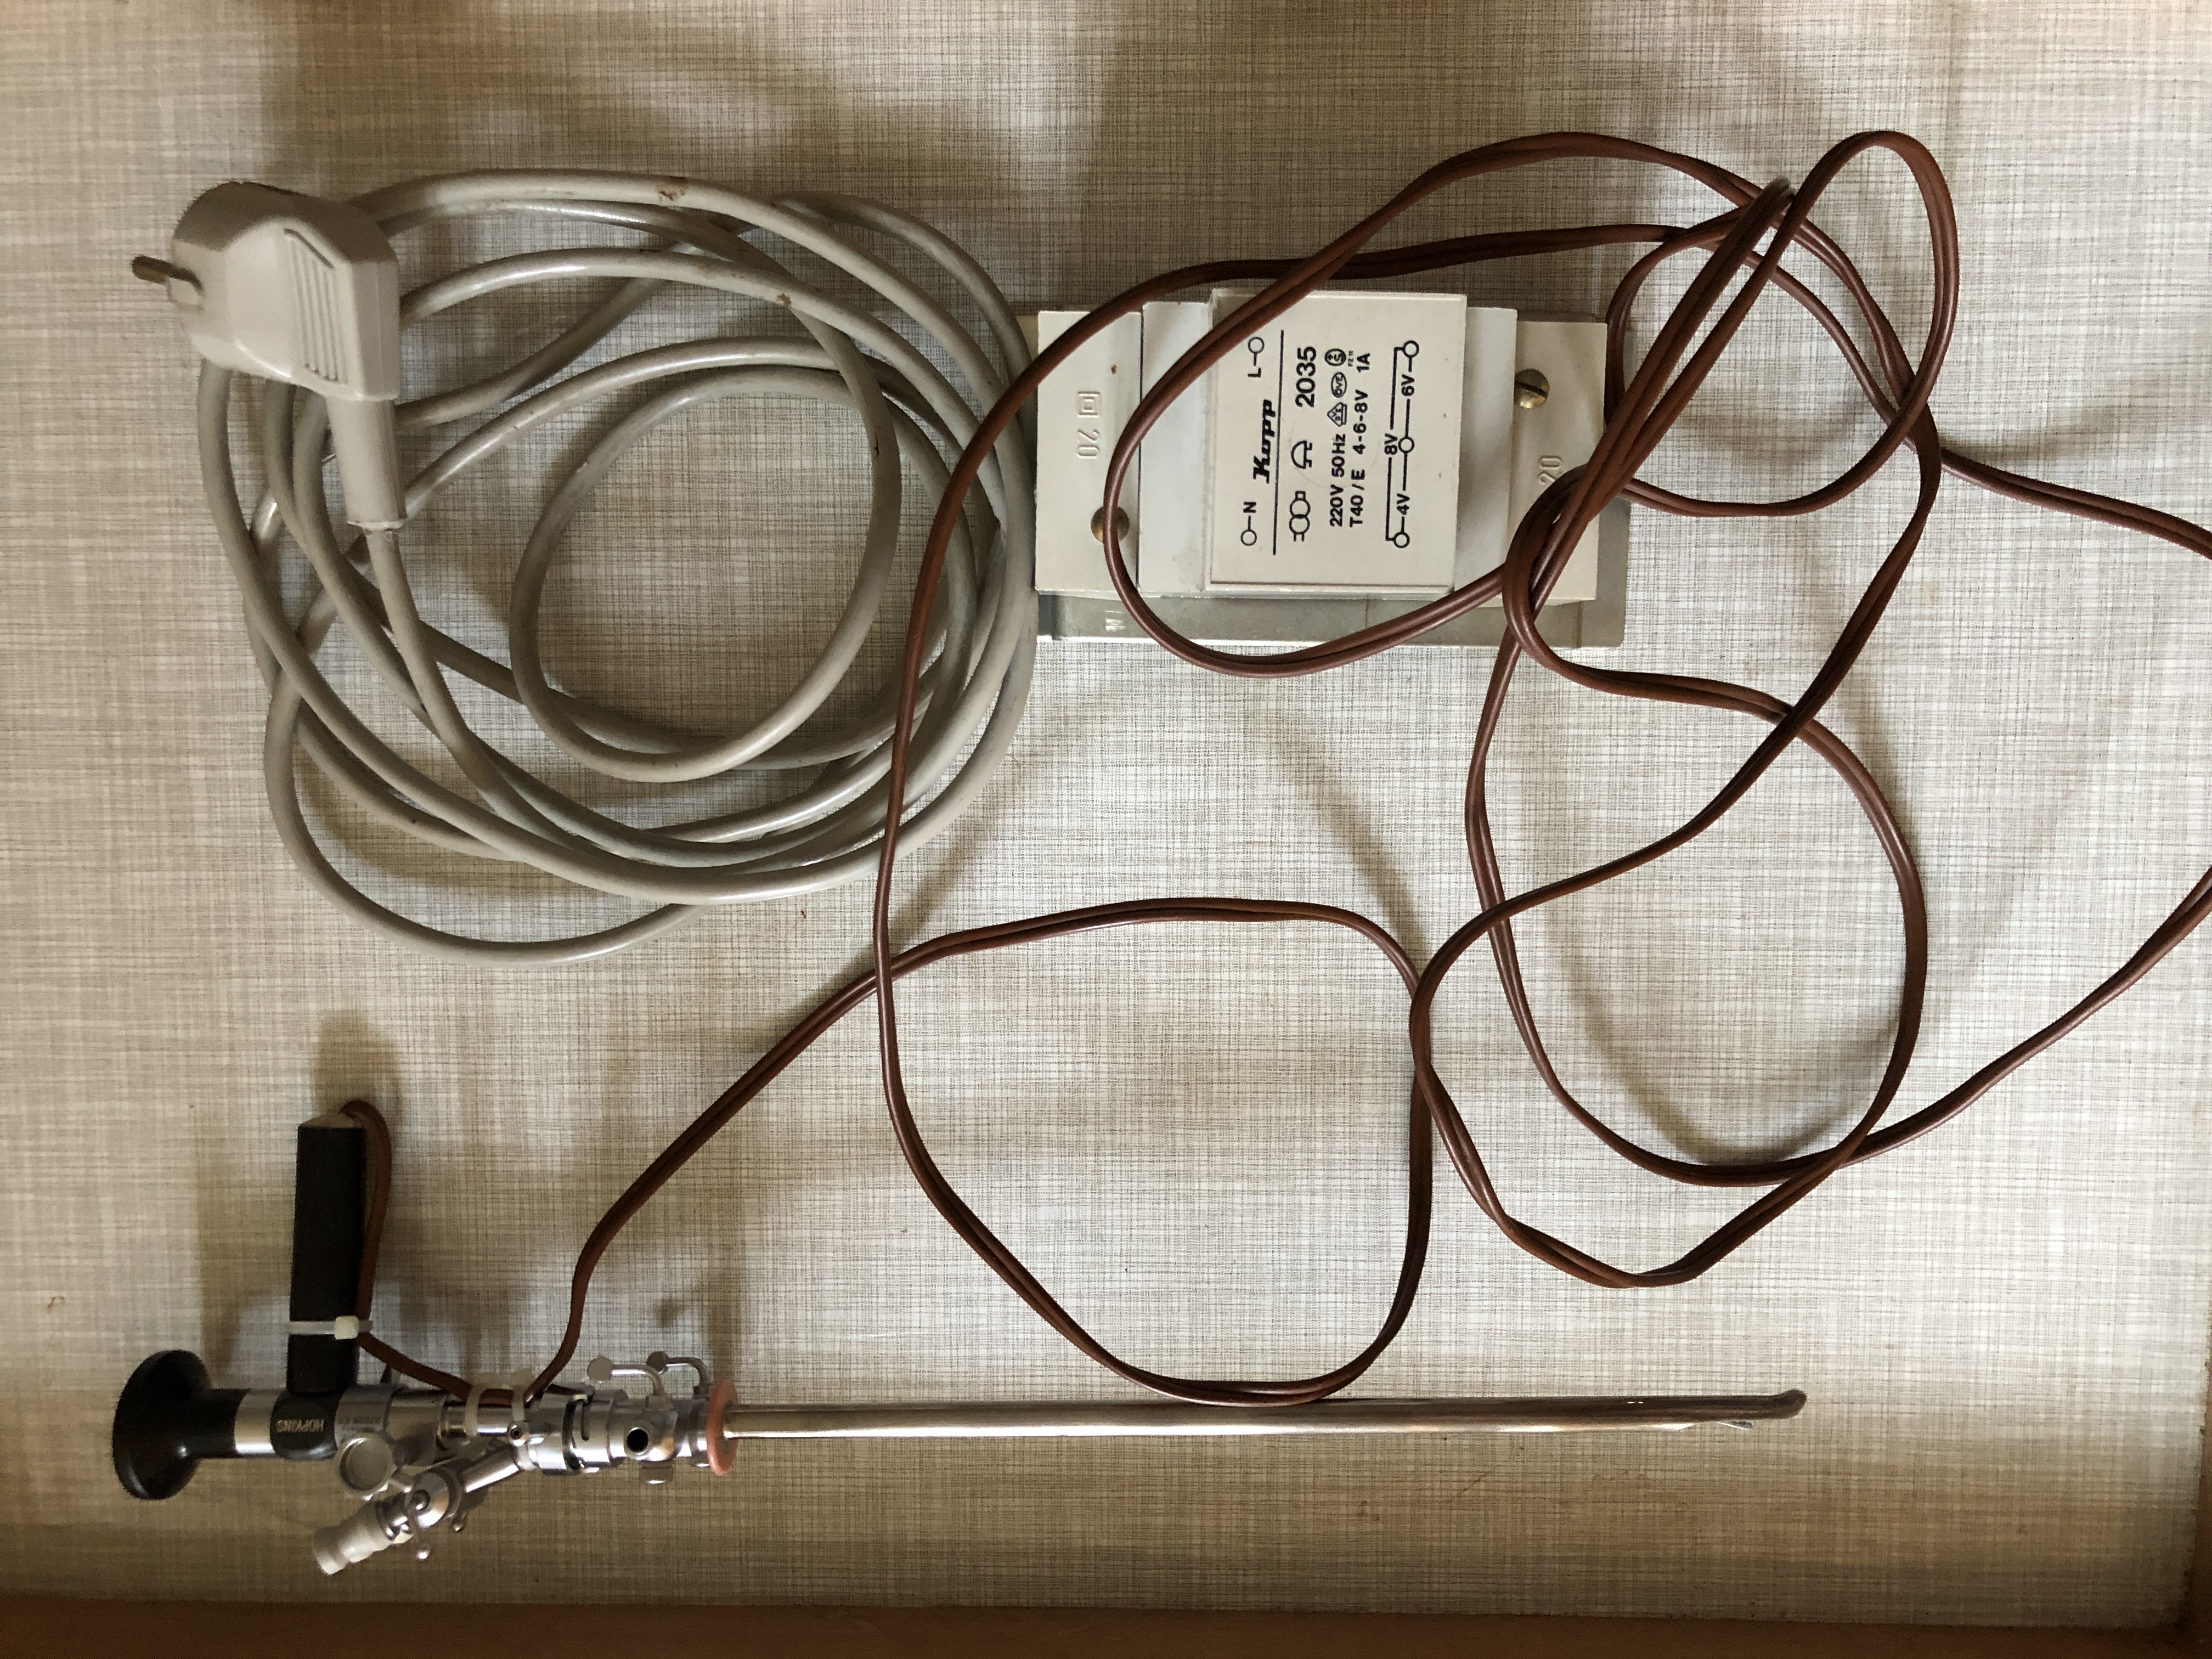 Endoskop Storz Hopkins (Krankenhausmuseum Bielefeld e.V. CC BY-NC-SA)